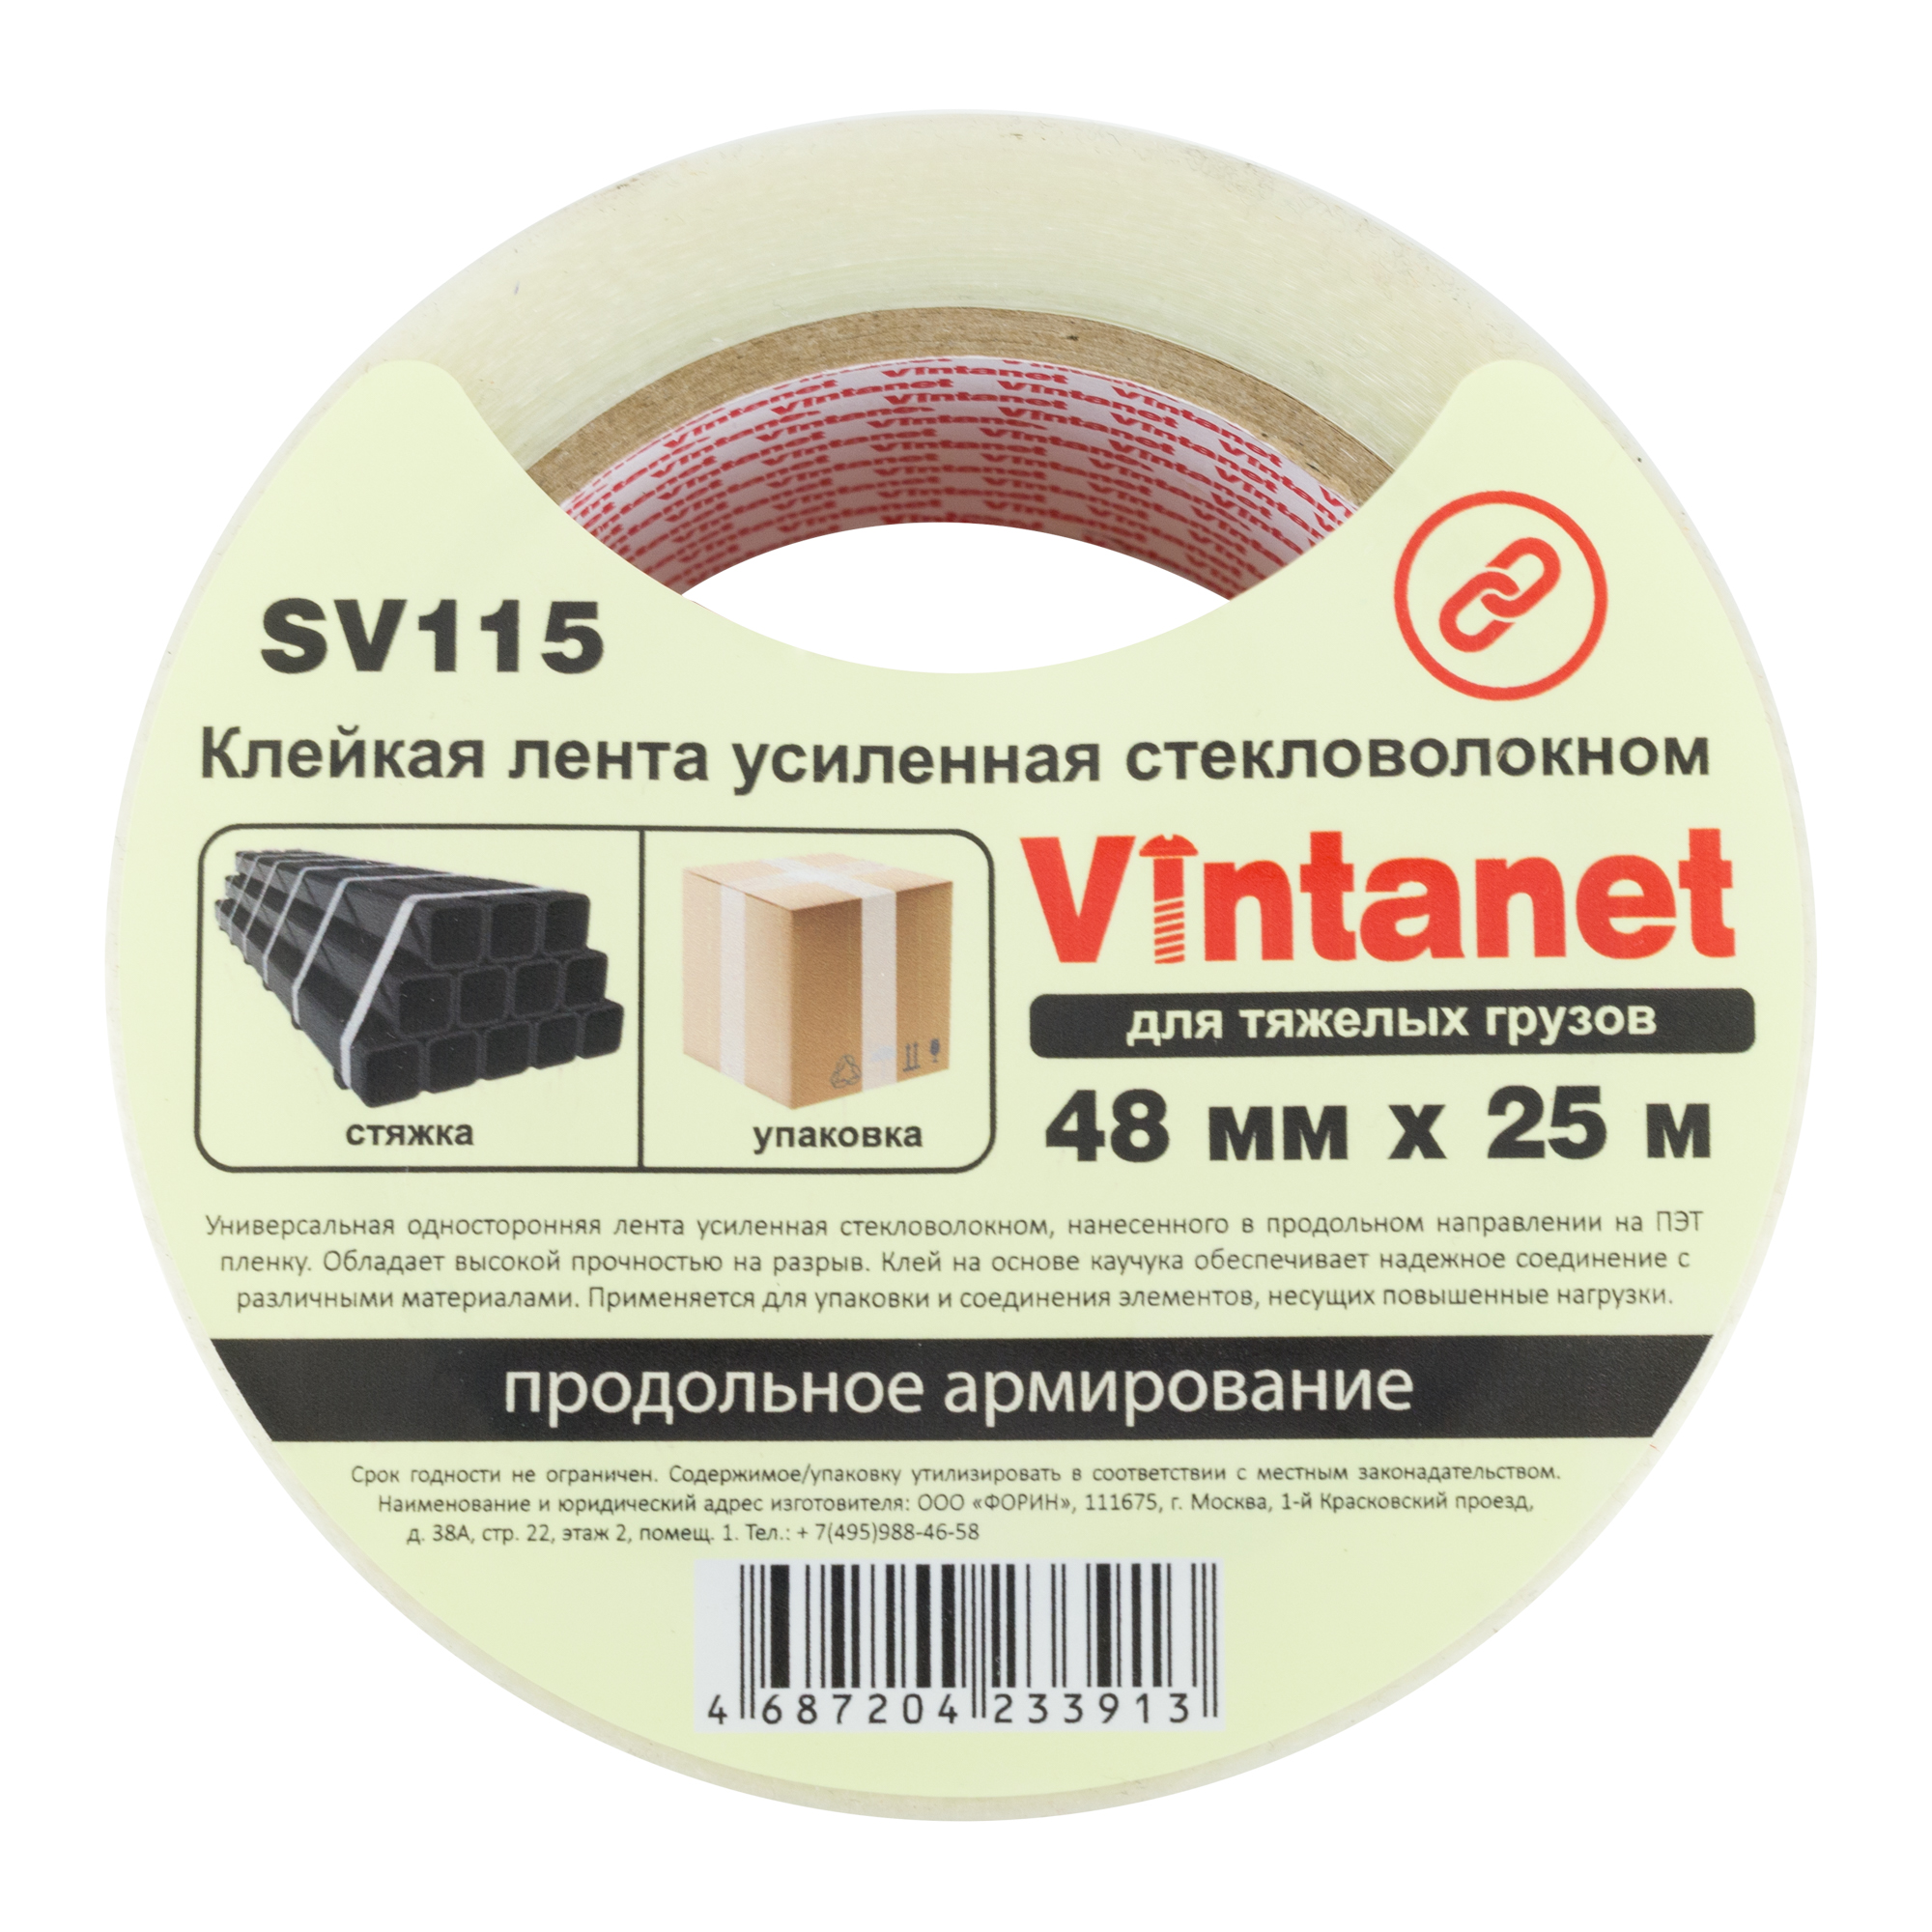 Клейкая лента усиленная стекловолокном Vintanet SV115, для тяжелых грузов, 48мм x 25м fiber gel для наращивания ногтей со стекловолокном led uv 15 мл прозрачный